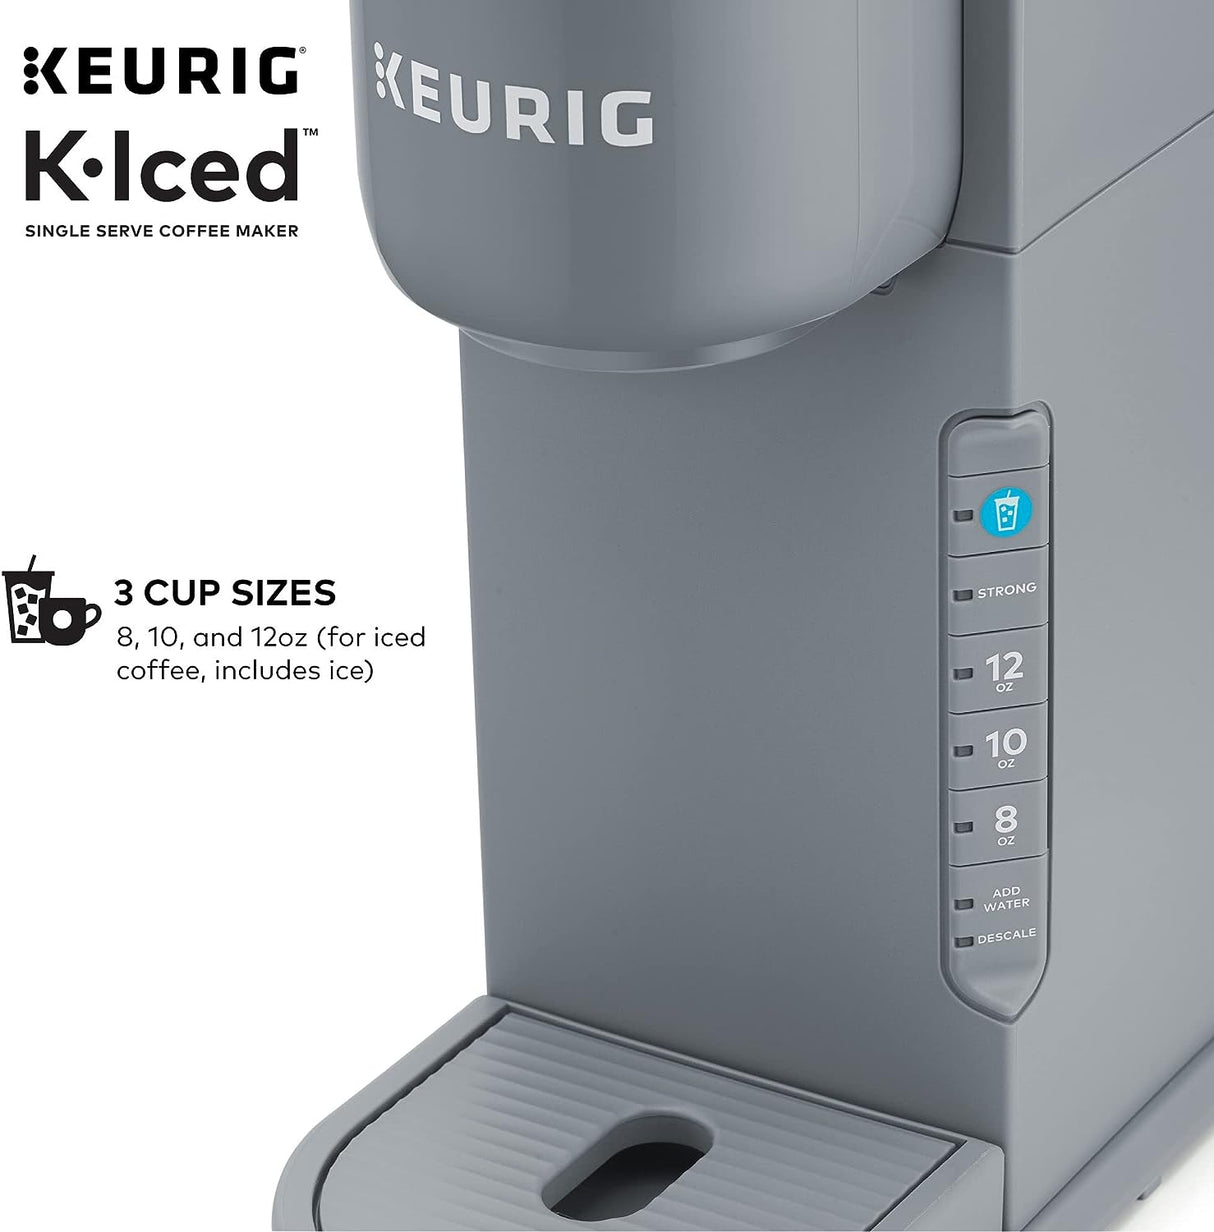 Keurig K-Iced Einzelportionskaffeemaschine brüht heiß und kalt (Grau) 